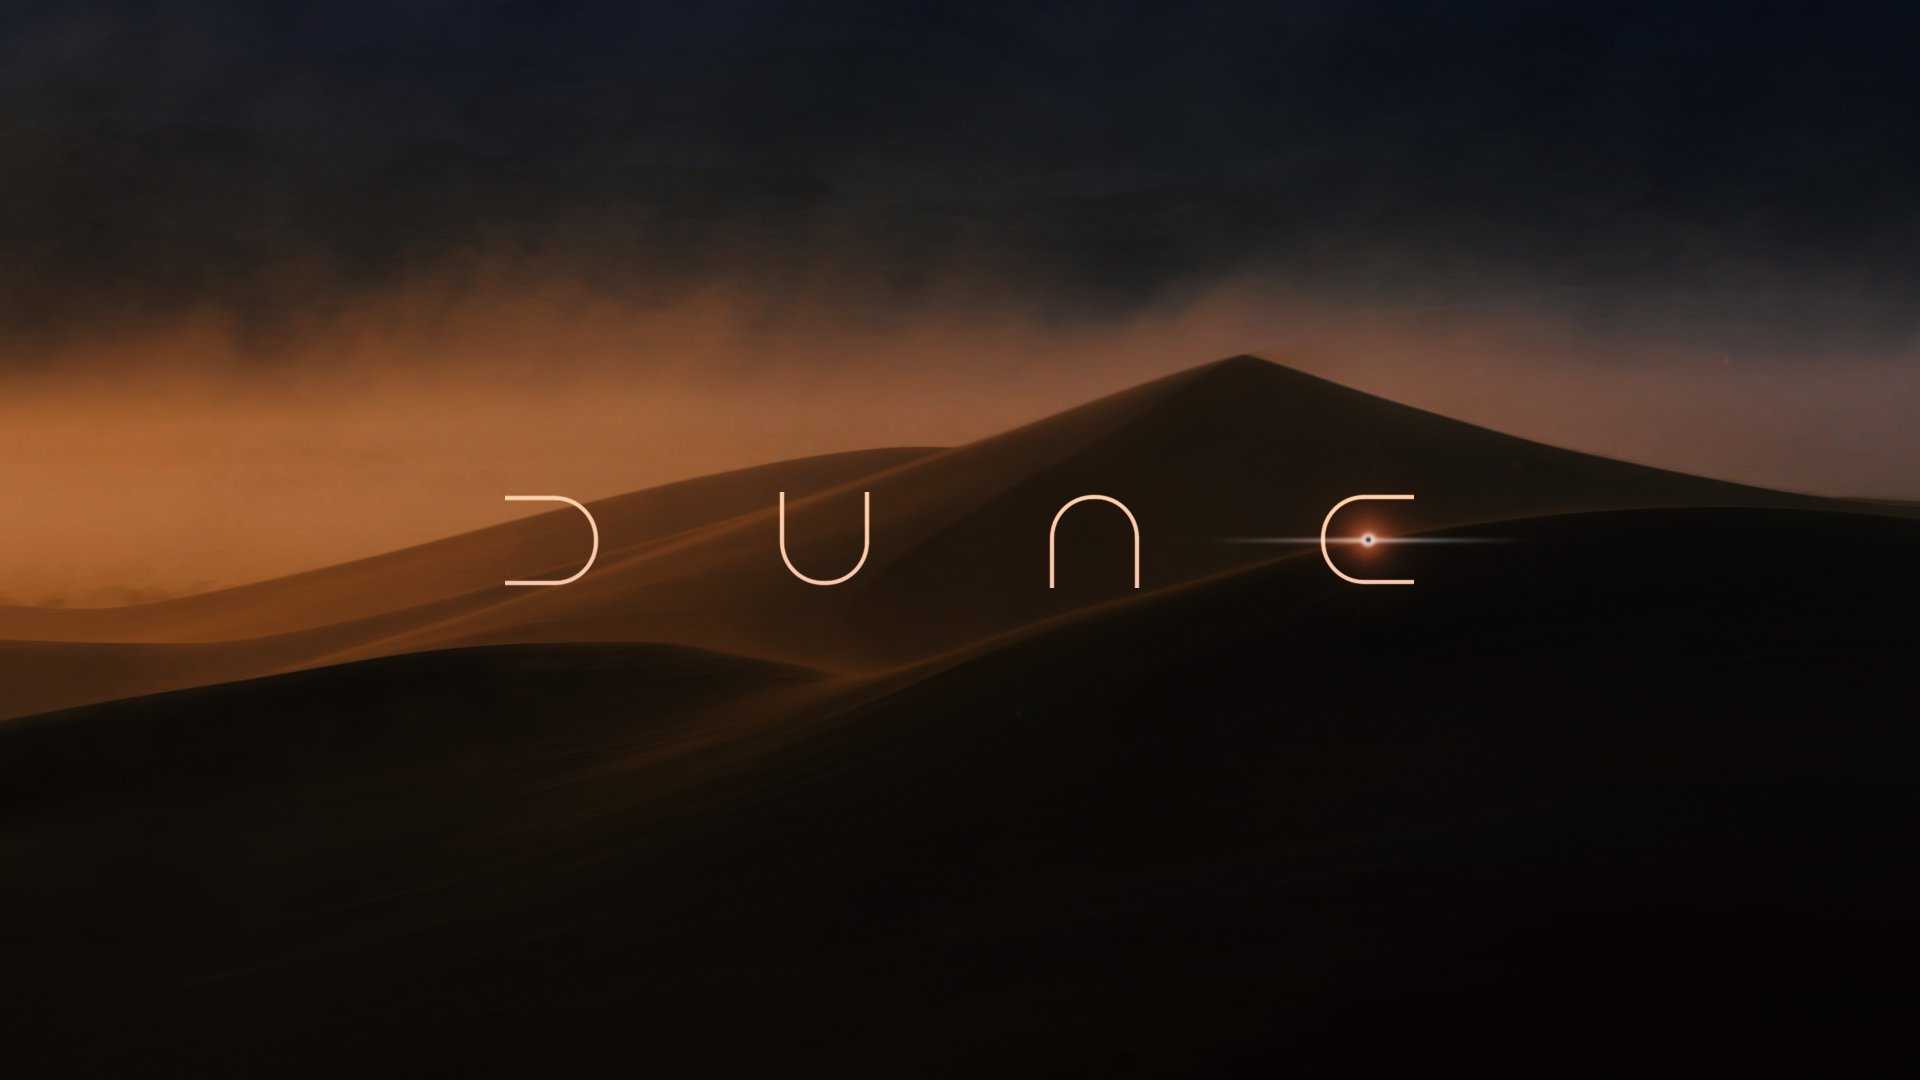 Dune Wallpaper - NawPic